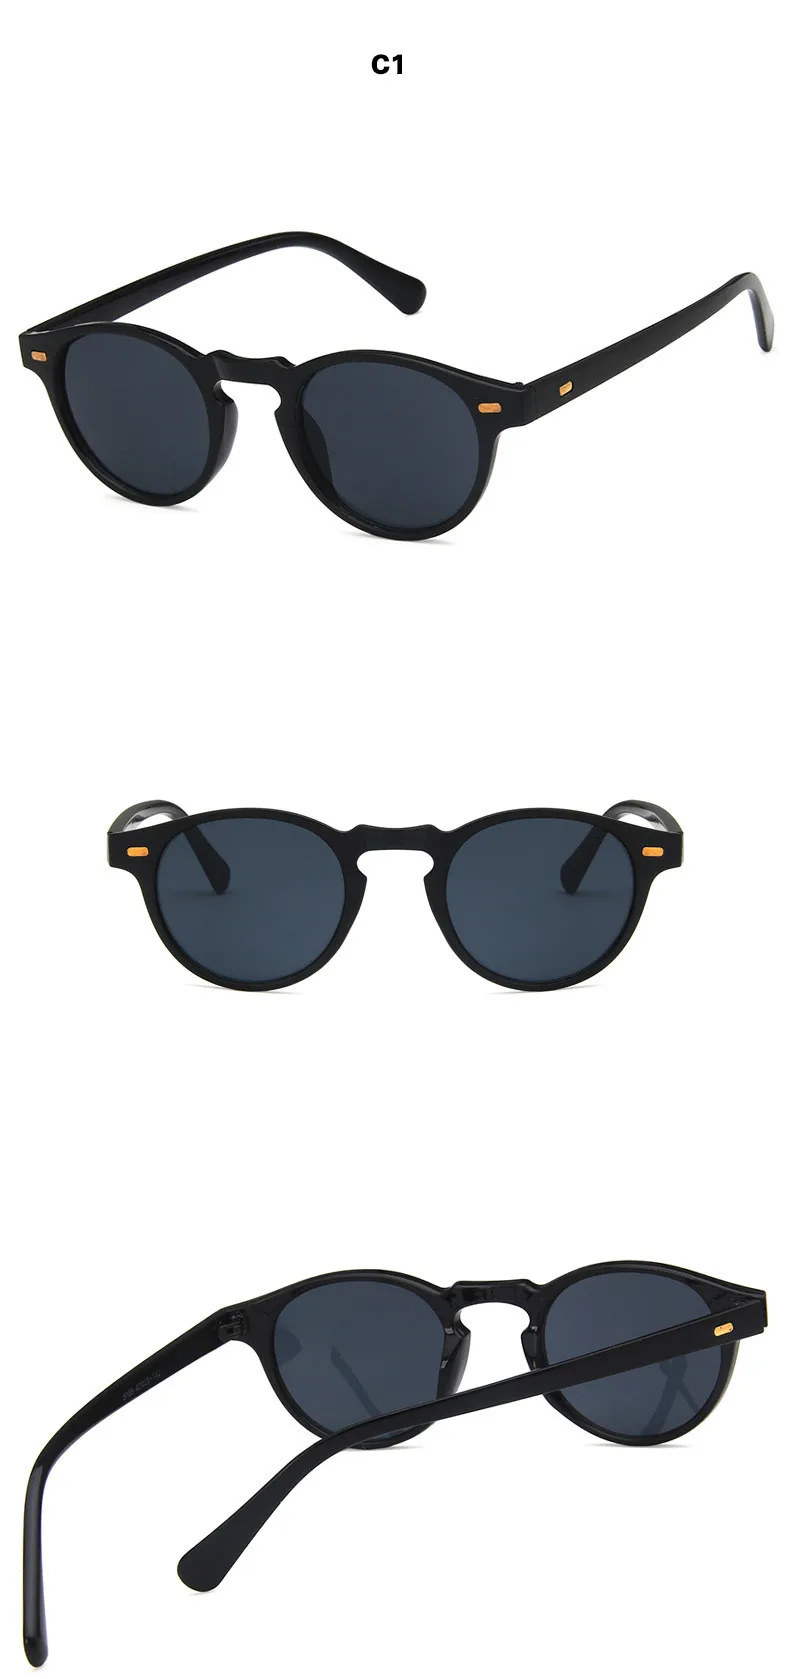 Круглые линзы, прозрачная оправа, солнцезащитные очки Gregory Peck, фирменный дизайн, мужские и женские солнцезащитные очки, Ретро стиль, gafas oculos, новая мода